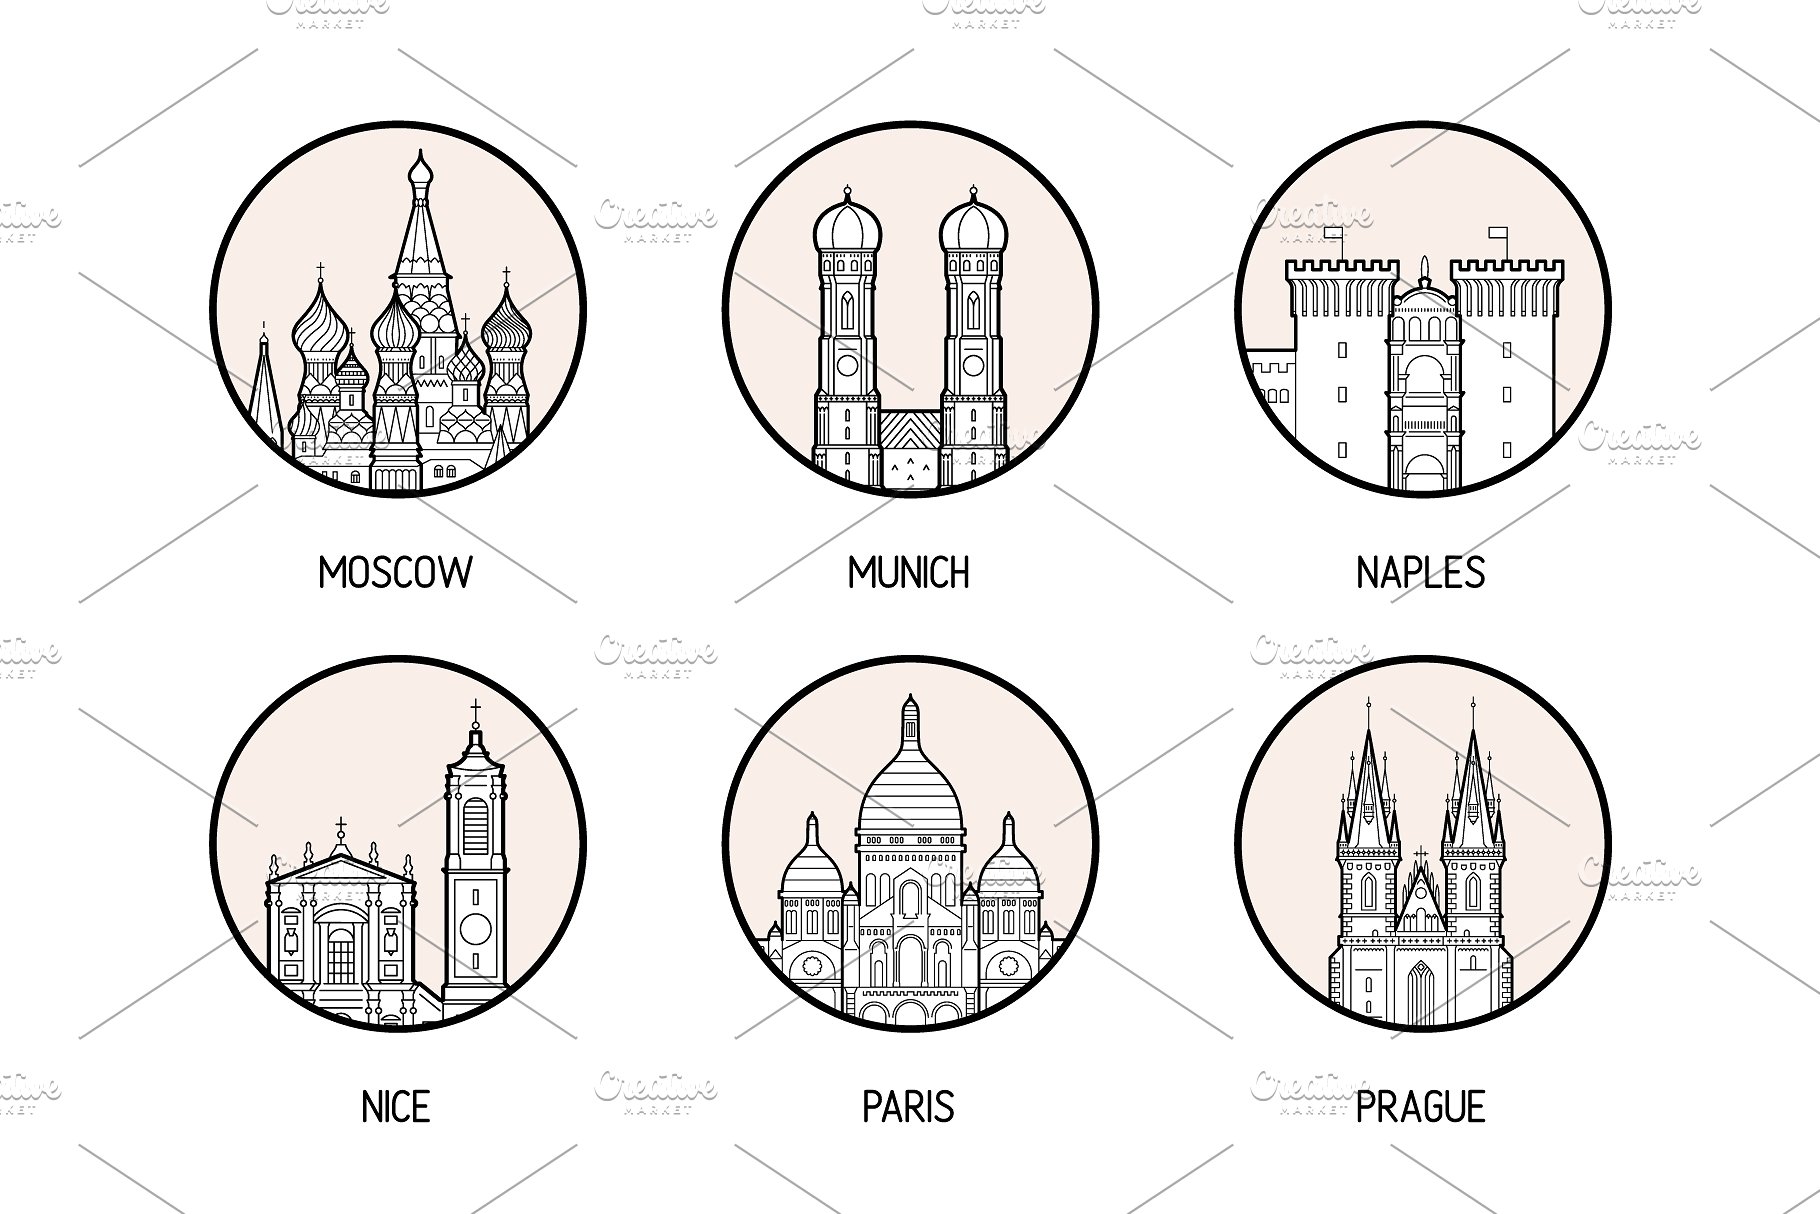 30个欧洲城市的徽章图标集合 Icons of 30 European cities插图5